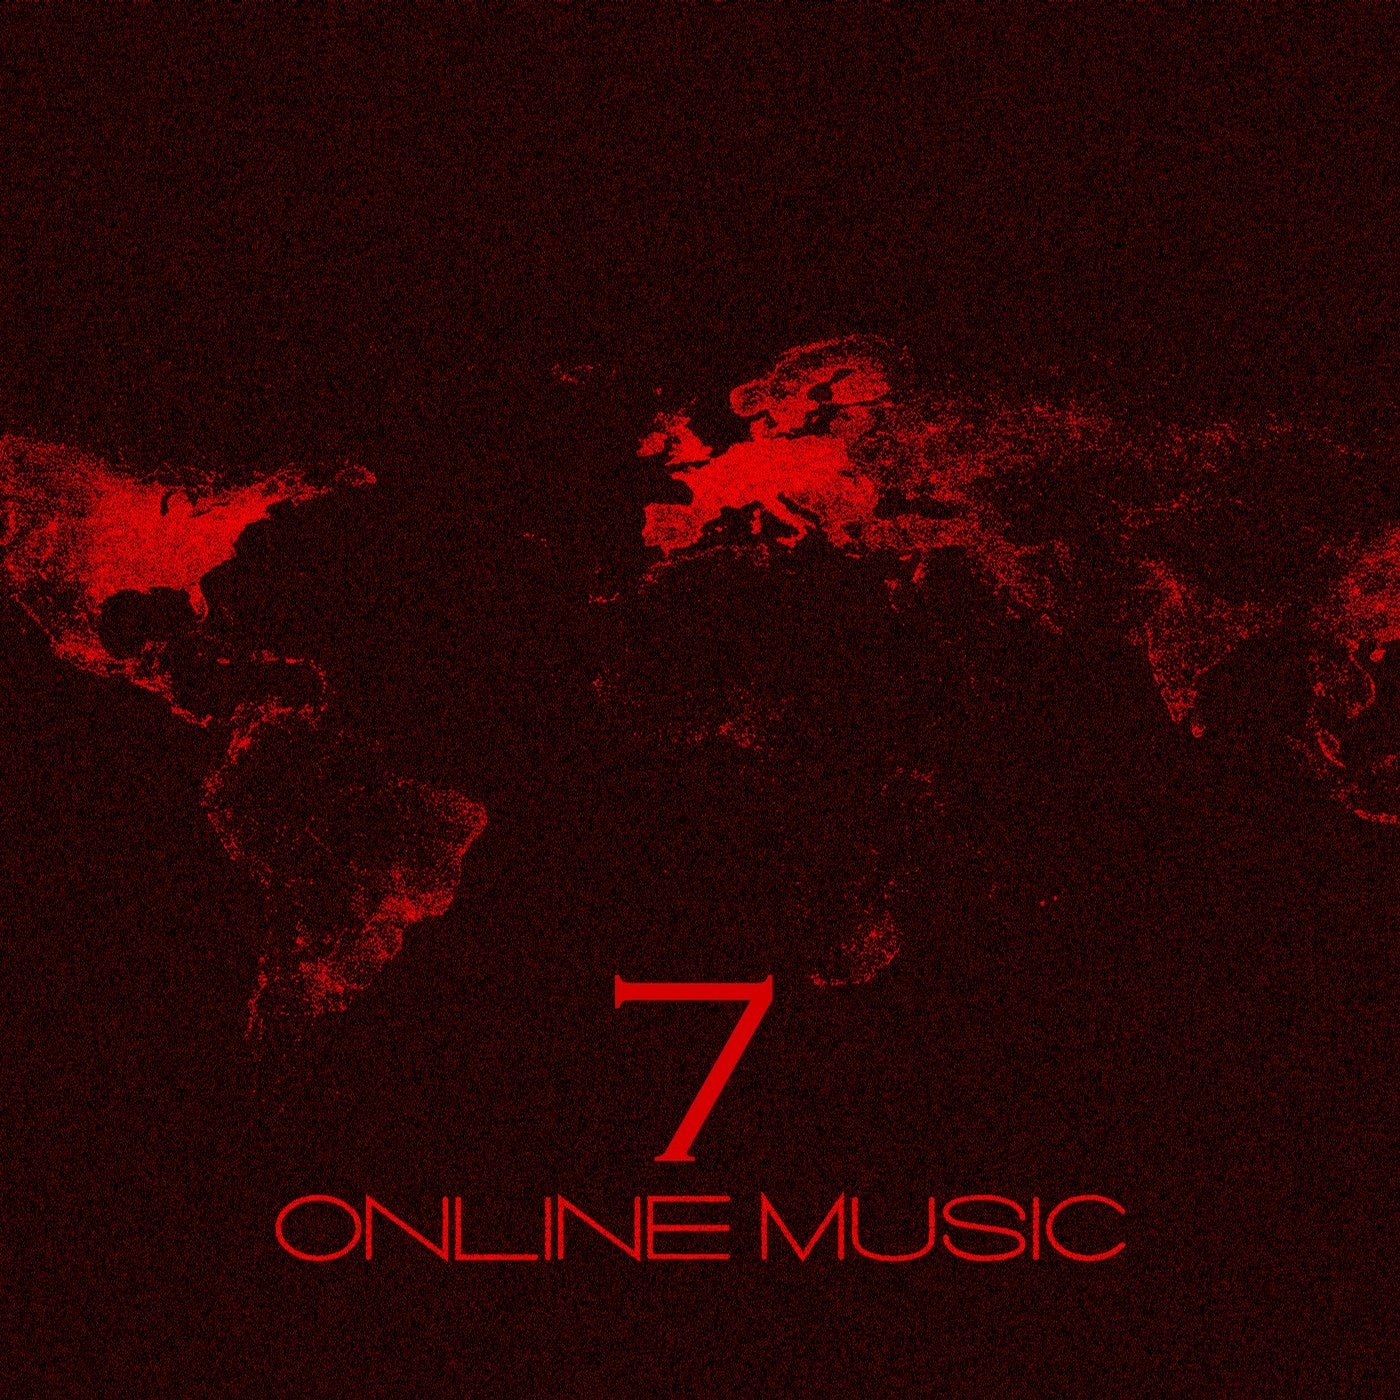 Online Music 7